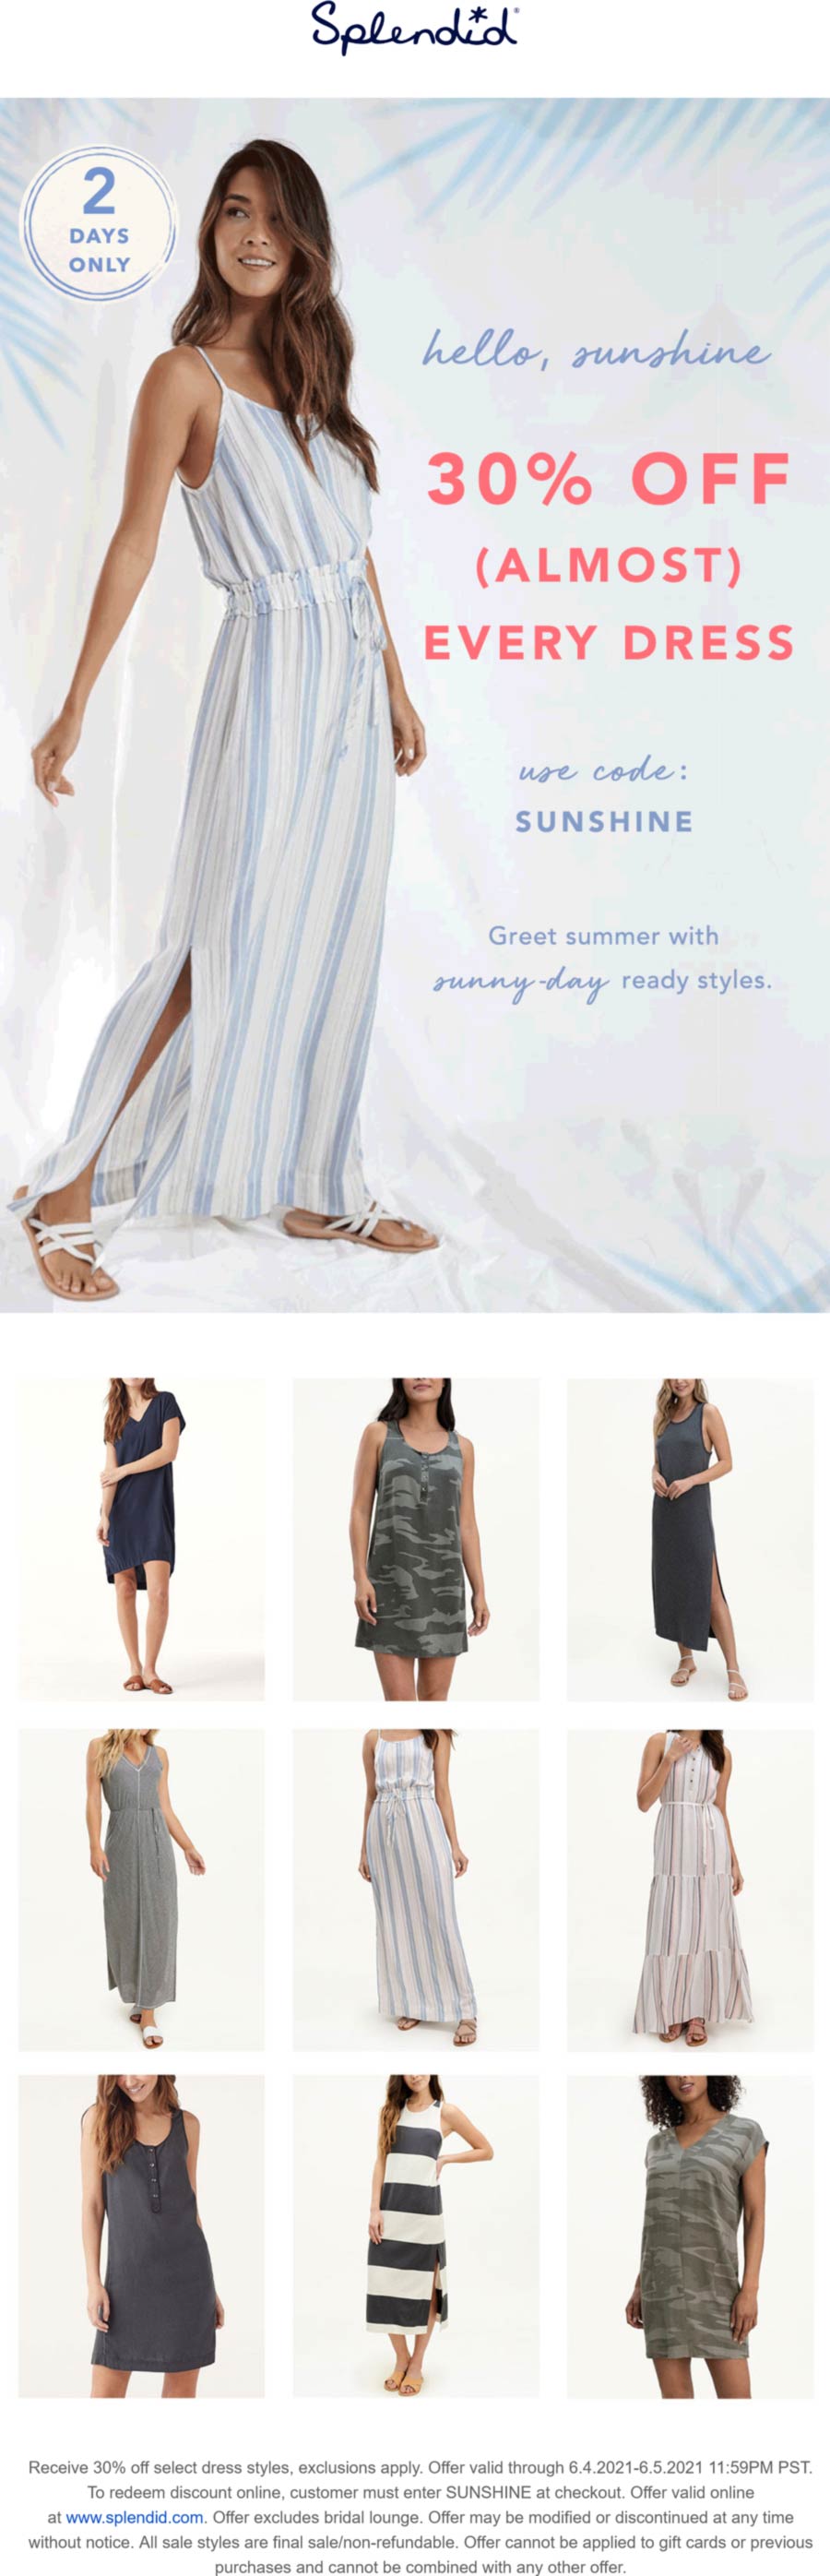 Splendid stores Coupon  30% off dresses at Splendid via promo code SUNSHINE #splendid 